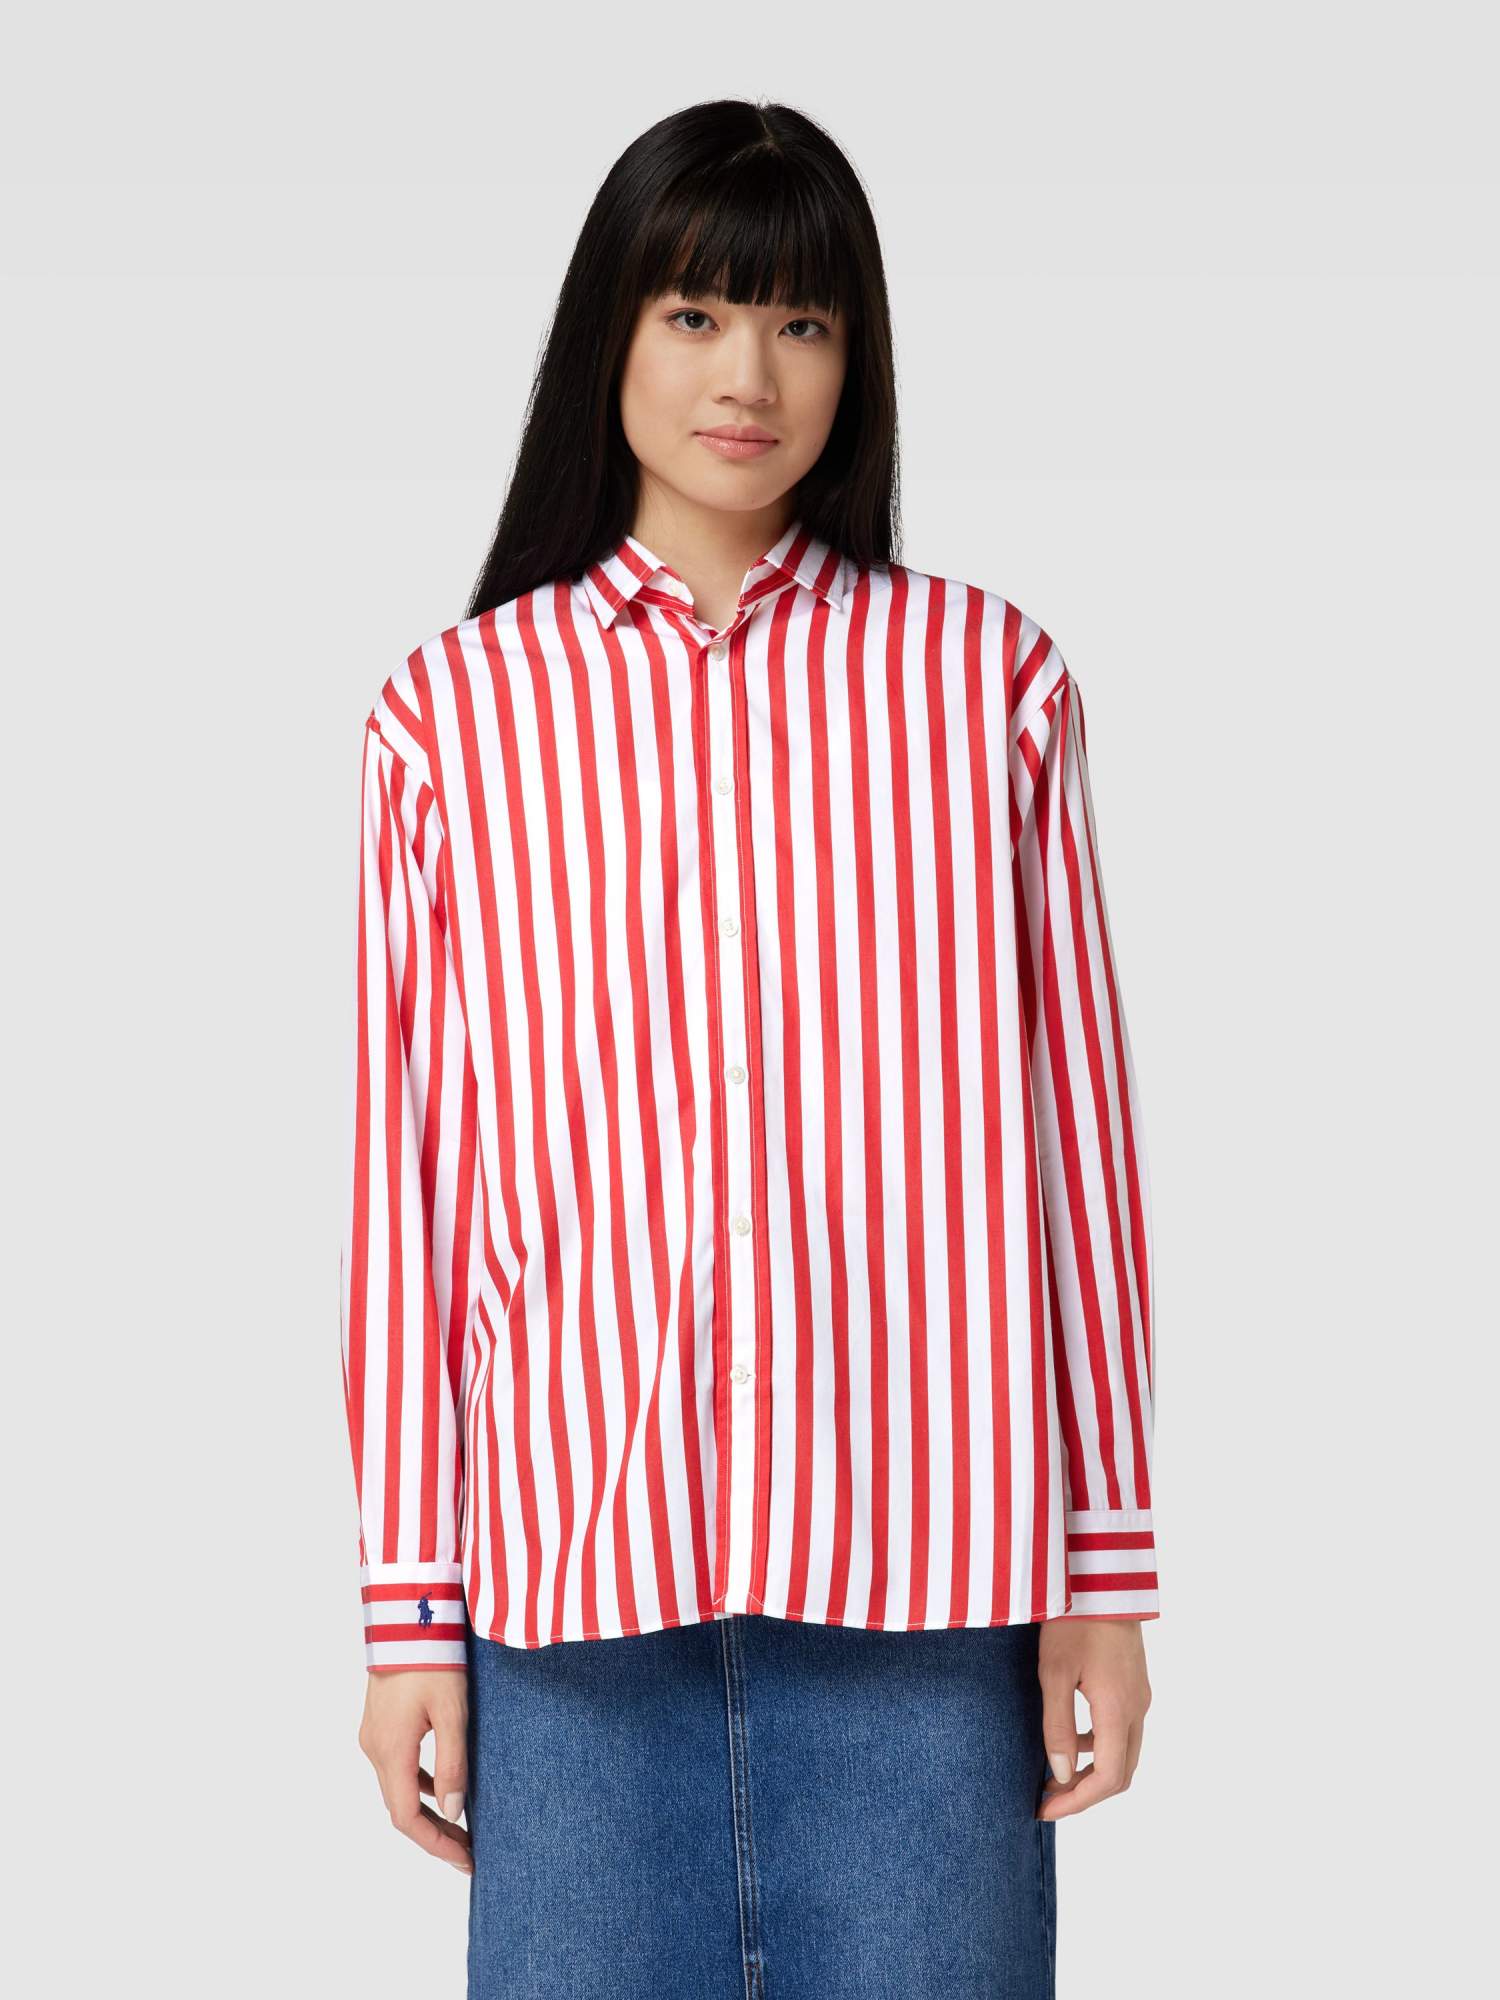 Рубашка женская Polo Ralph Lauren 1889705 красная 34 EU - купить в Москве, цены на Мегамаркет | 600016140175